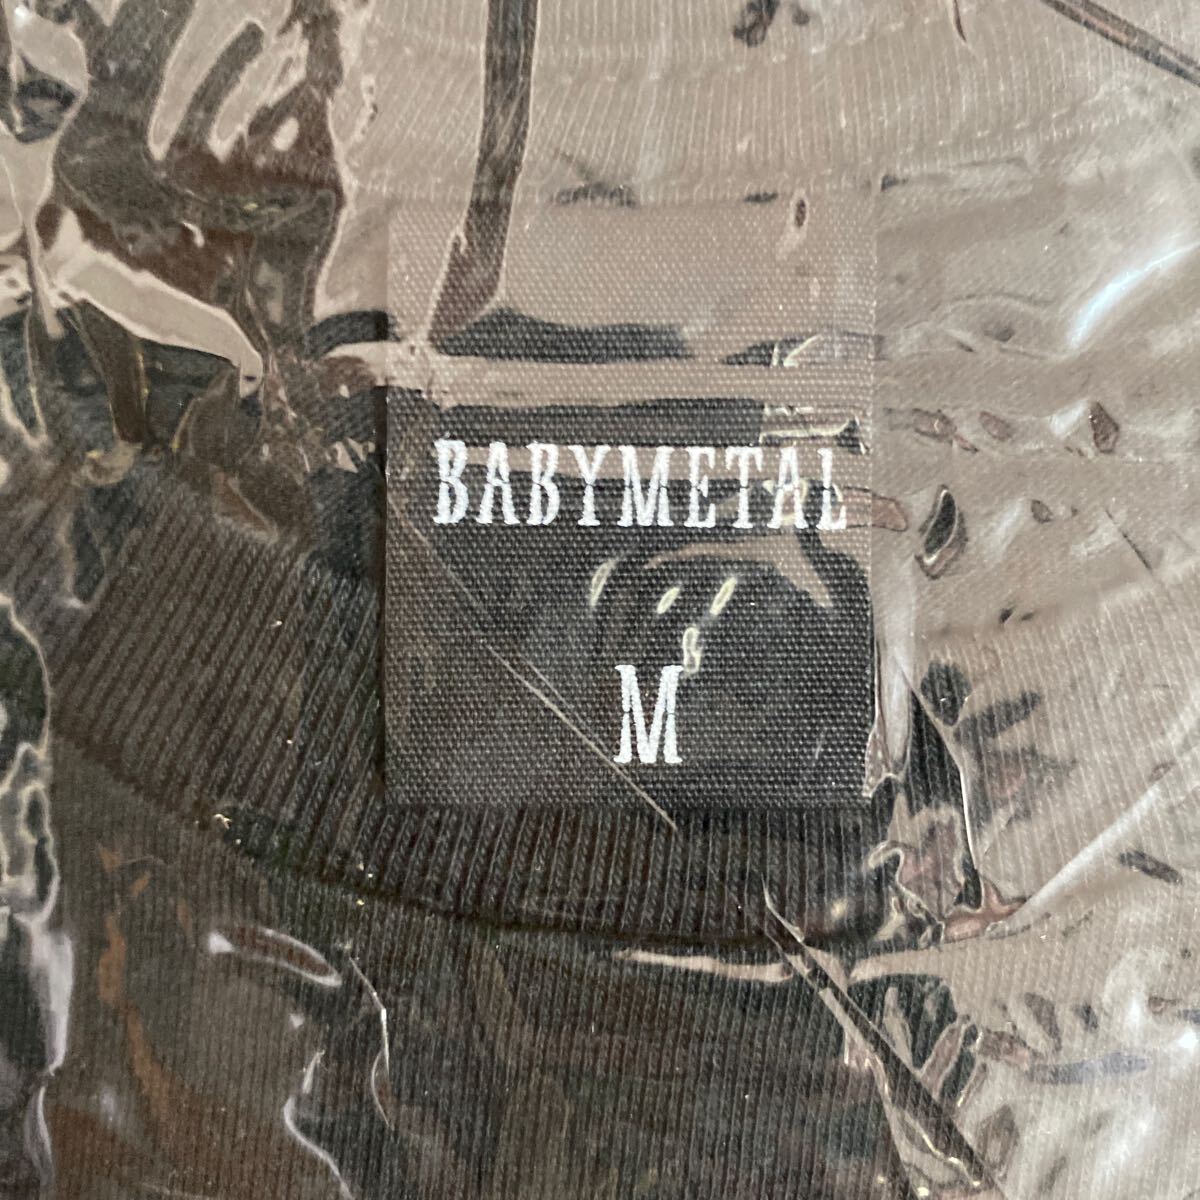 ★ неиспользуемый ★ BABYMETAL BEYOND THE MOON LEGEND -M-  футболка   черный  M размер    нераспечатанный ...／... металлический   ... футболка ...